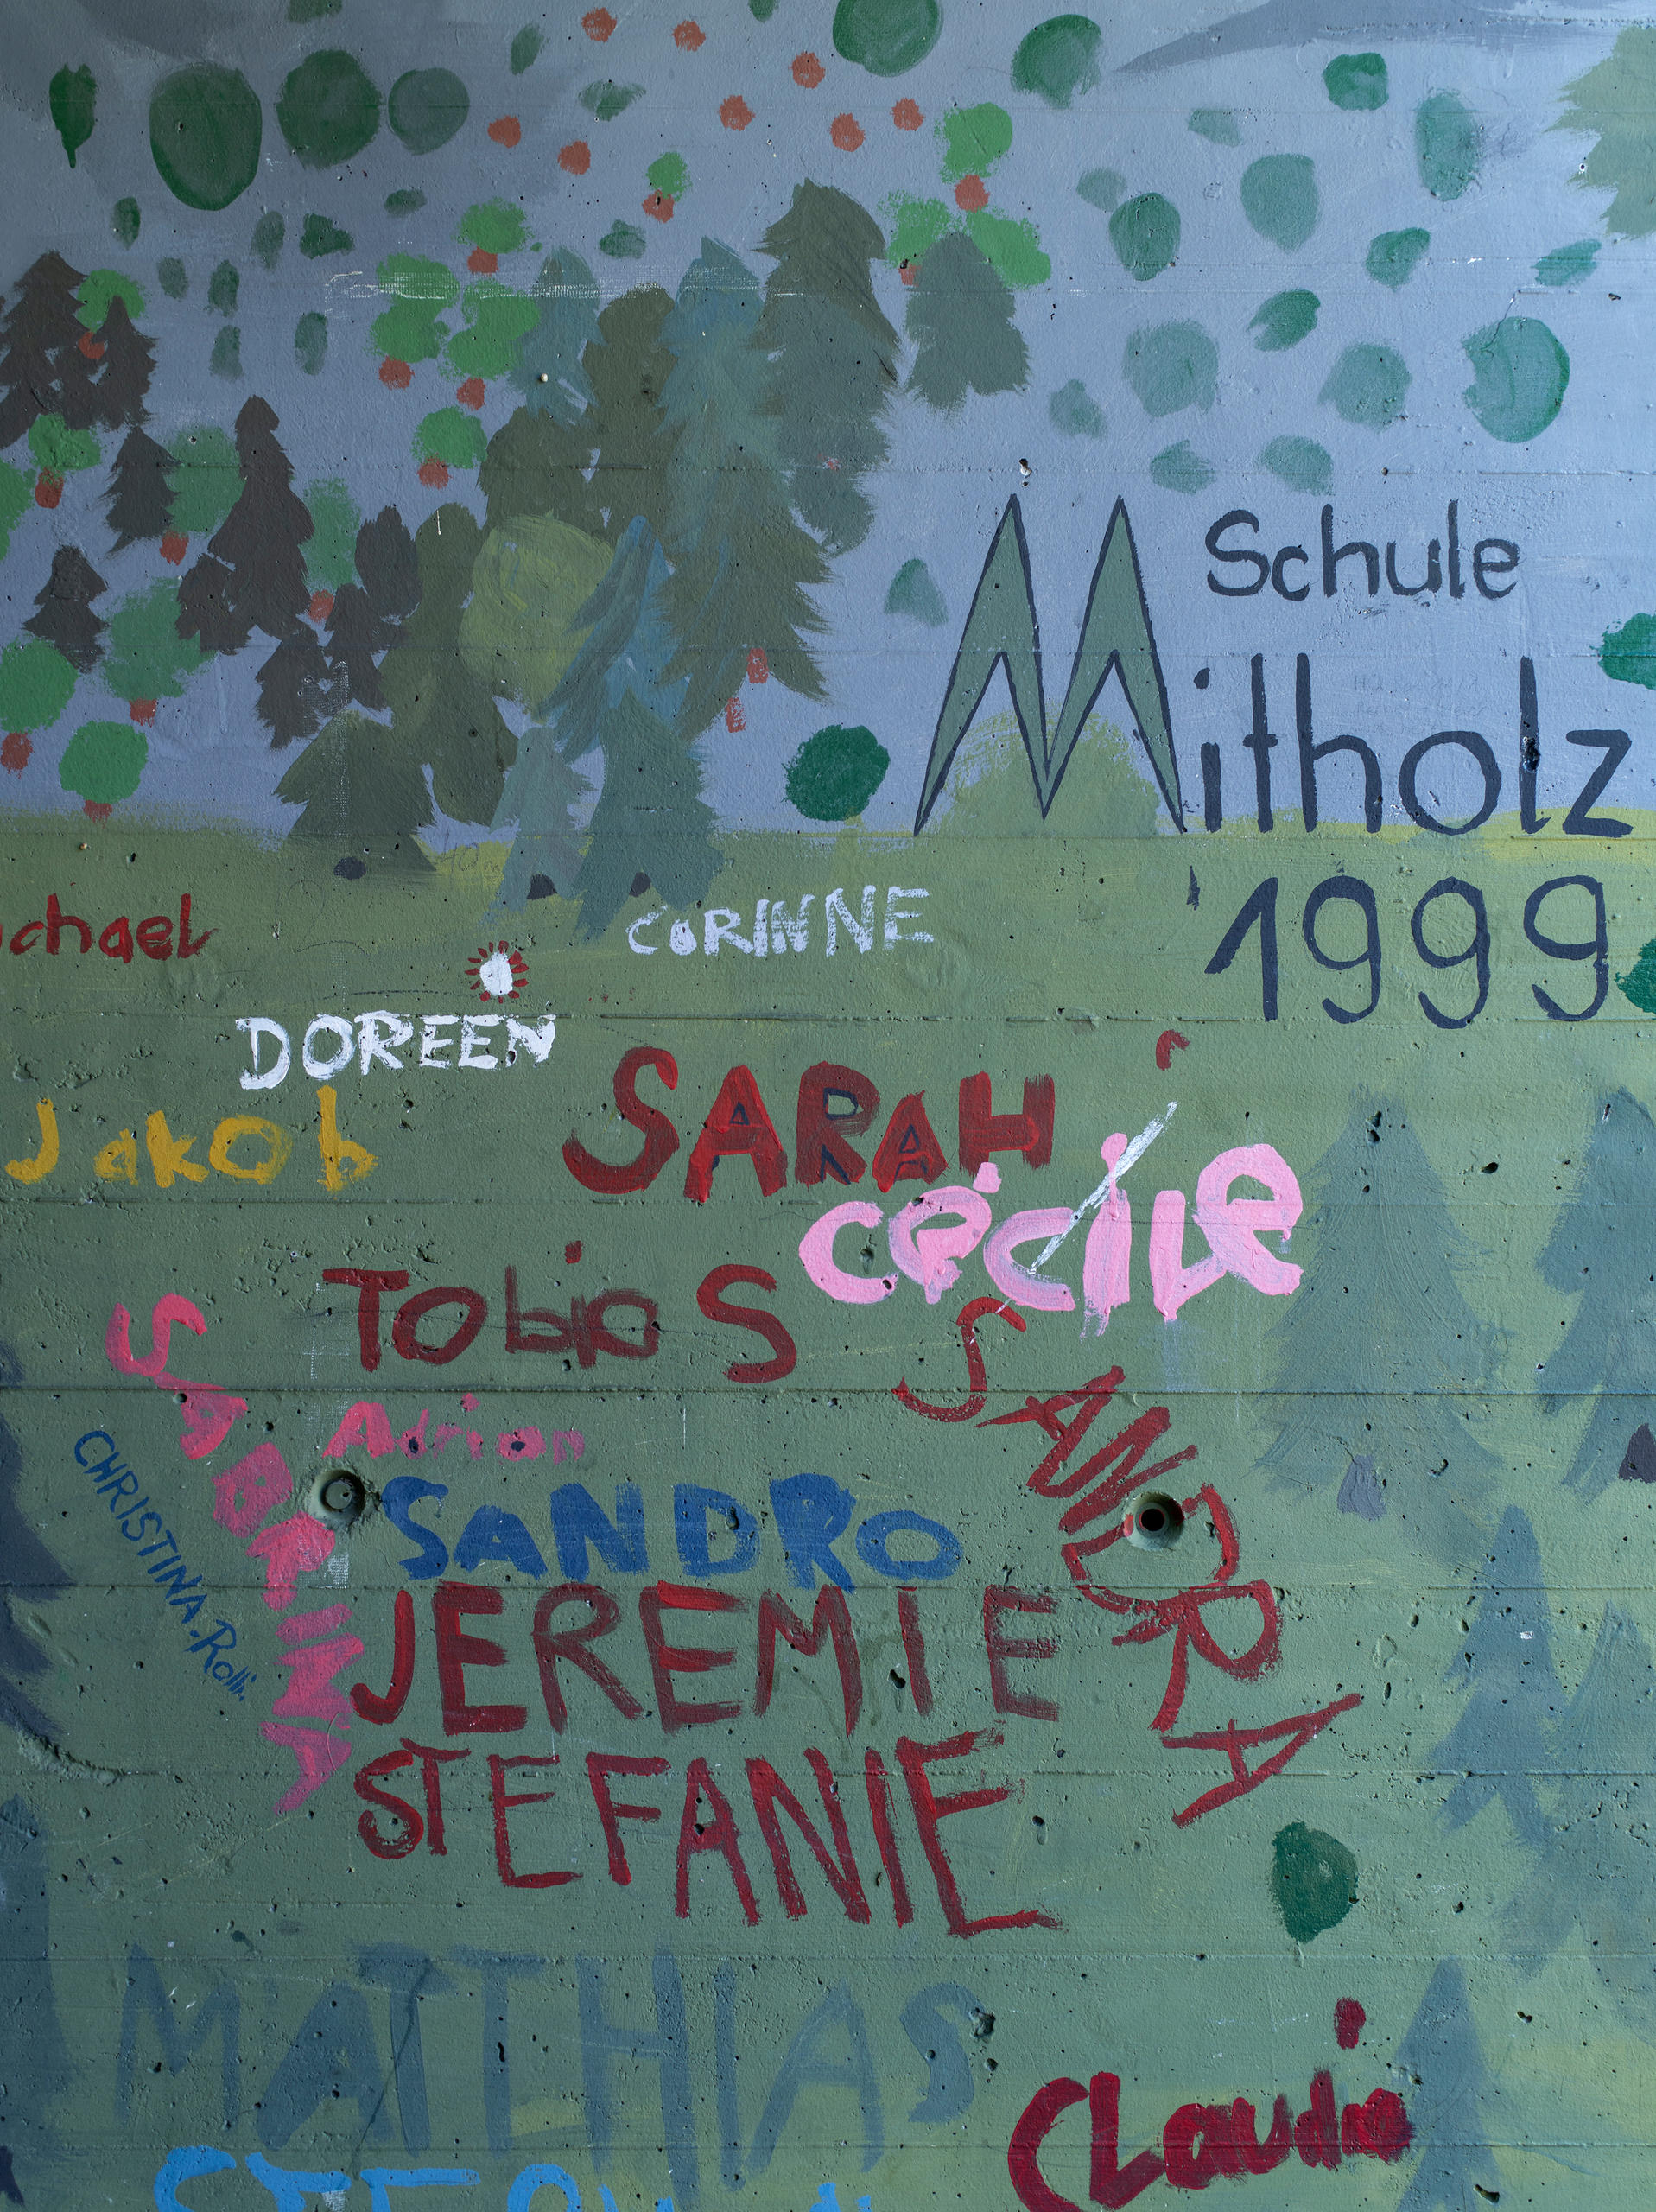 Mutholz主街道的地下通道里学生们在墙上画的画。